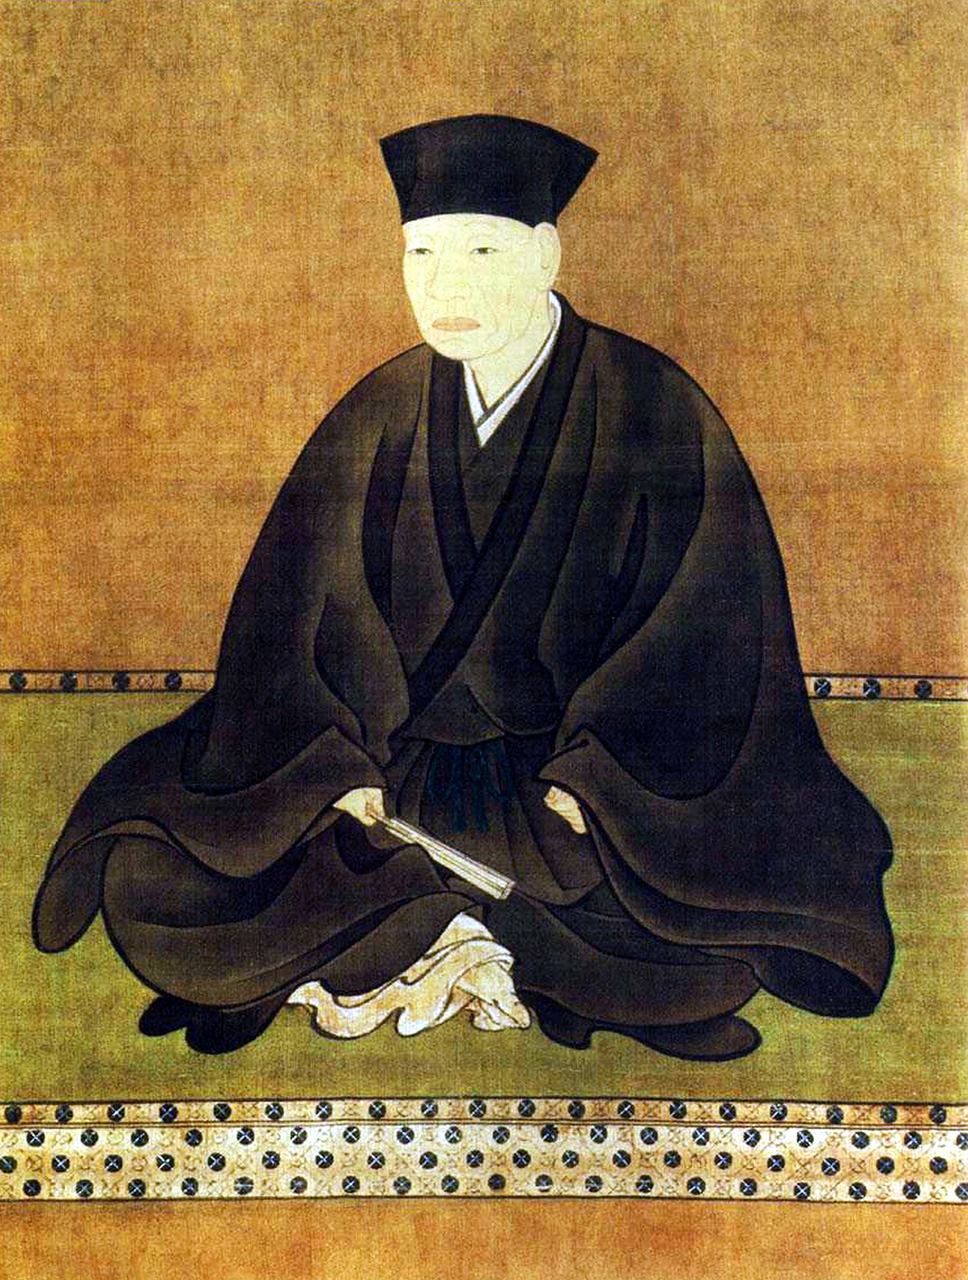 Portrait de Sen no Rikyû par Hasegawa Tôhaku. (Aflo)